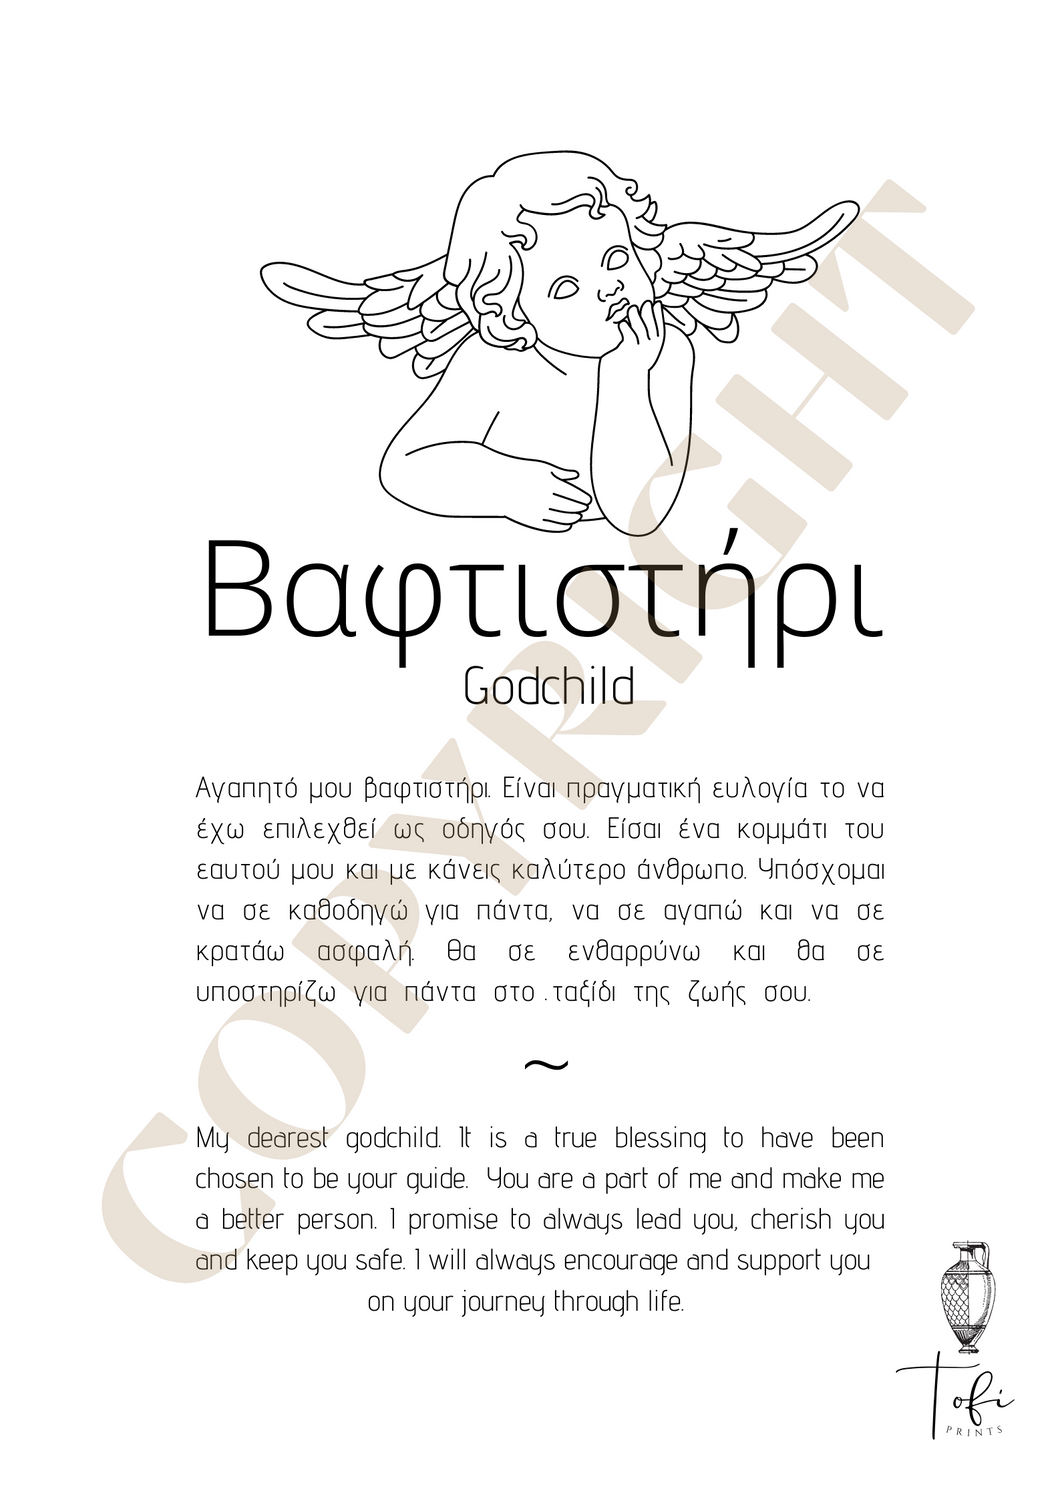 Βαφτιστήρι - Godchild